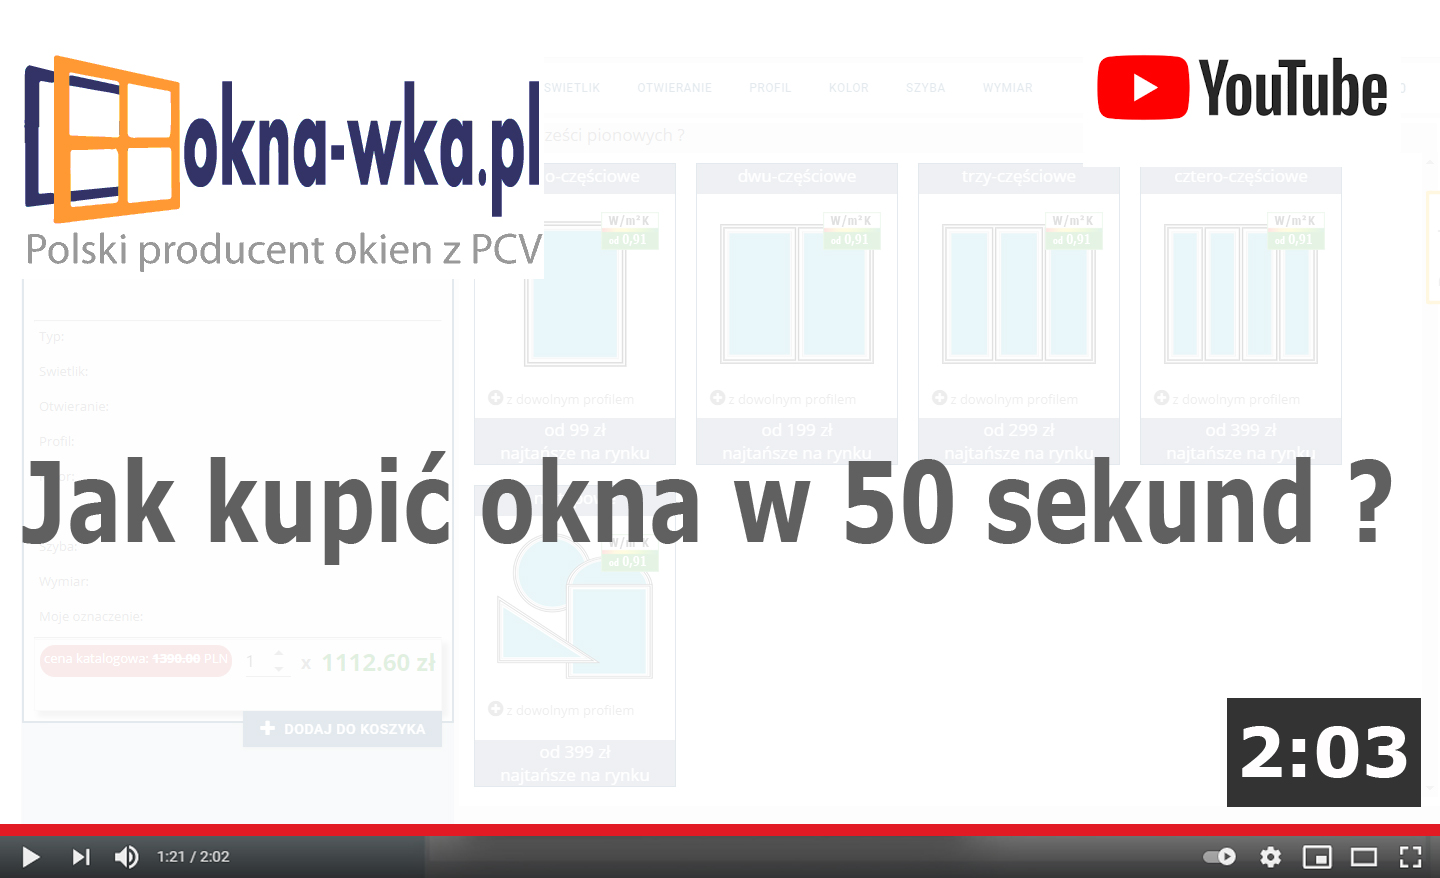 YouTube kanał na OKNA-WKA.PL